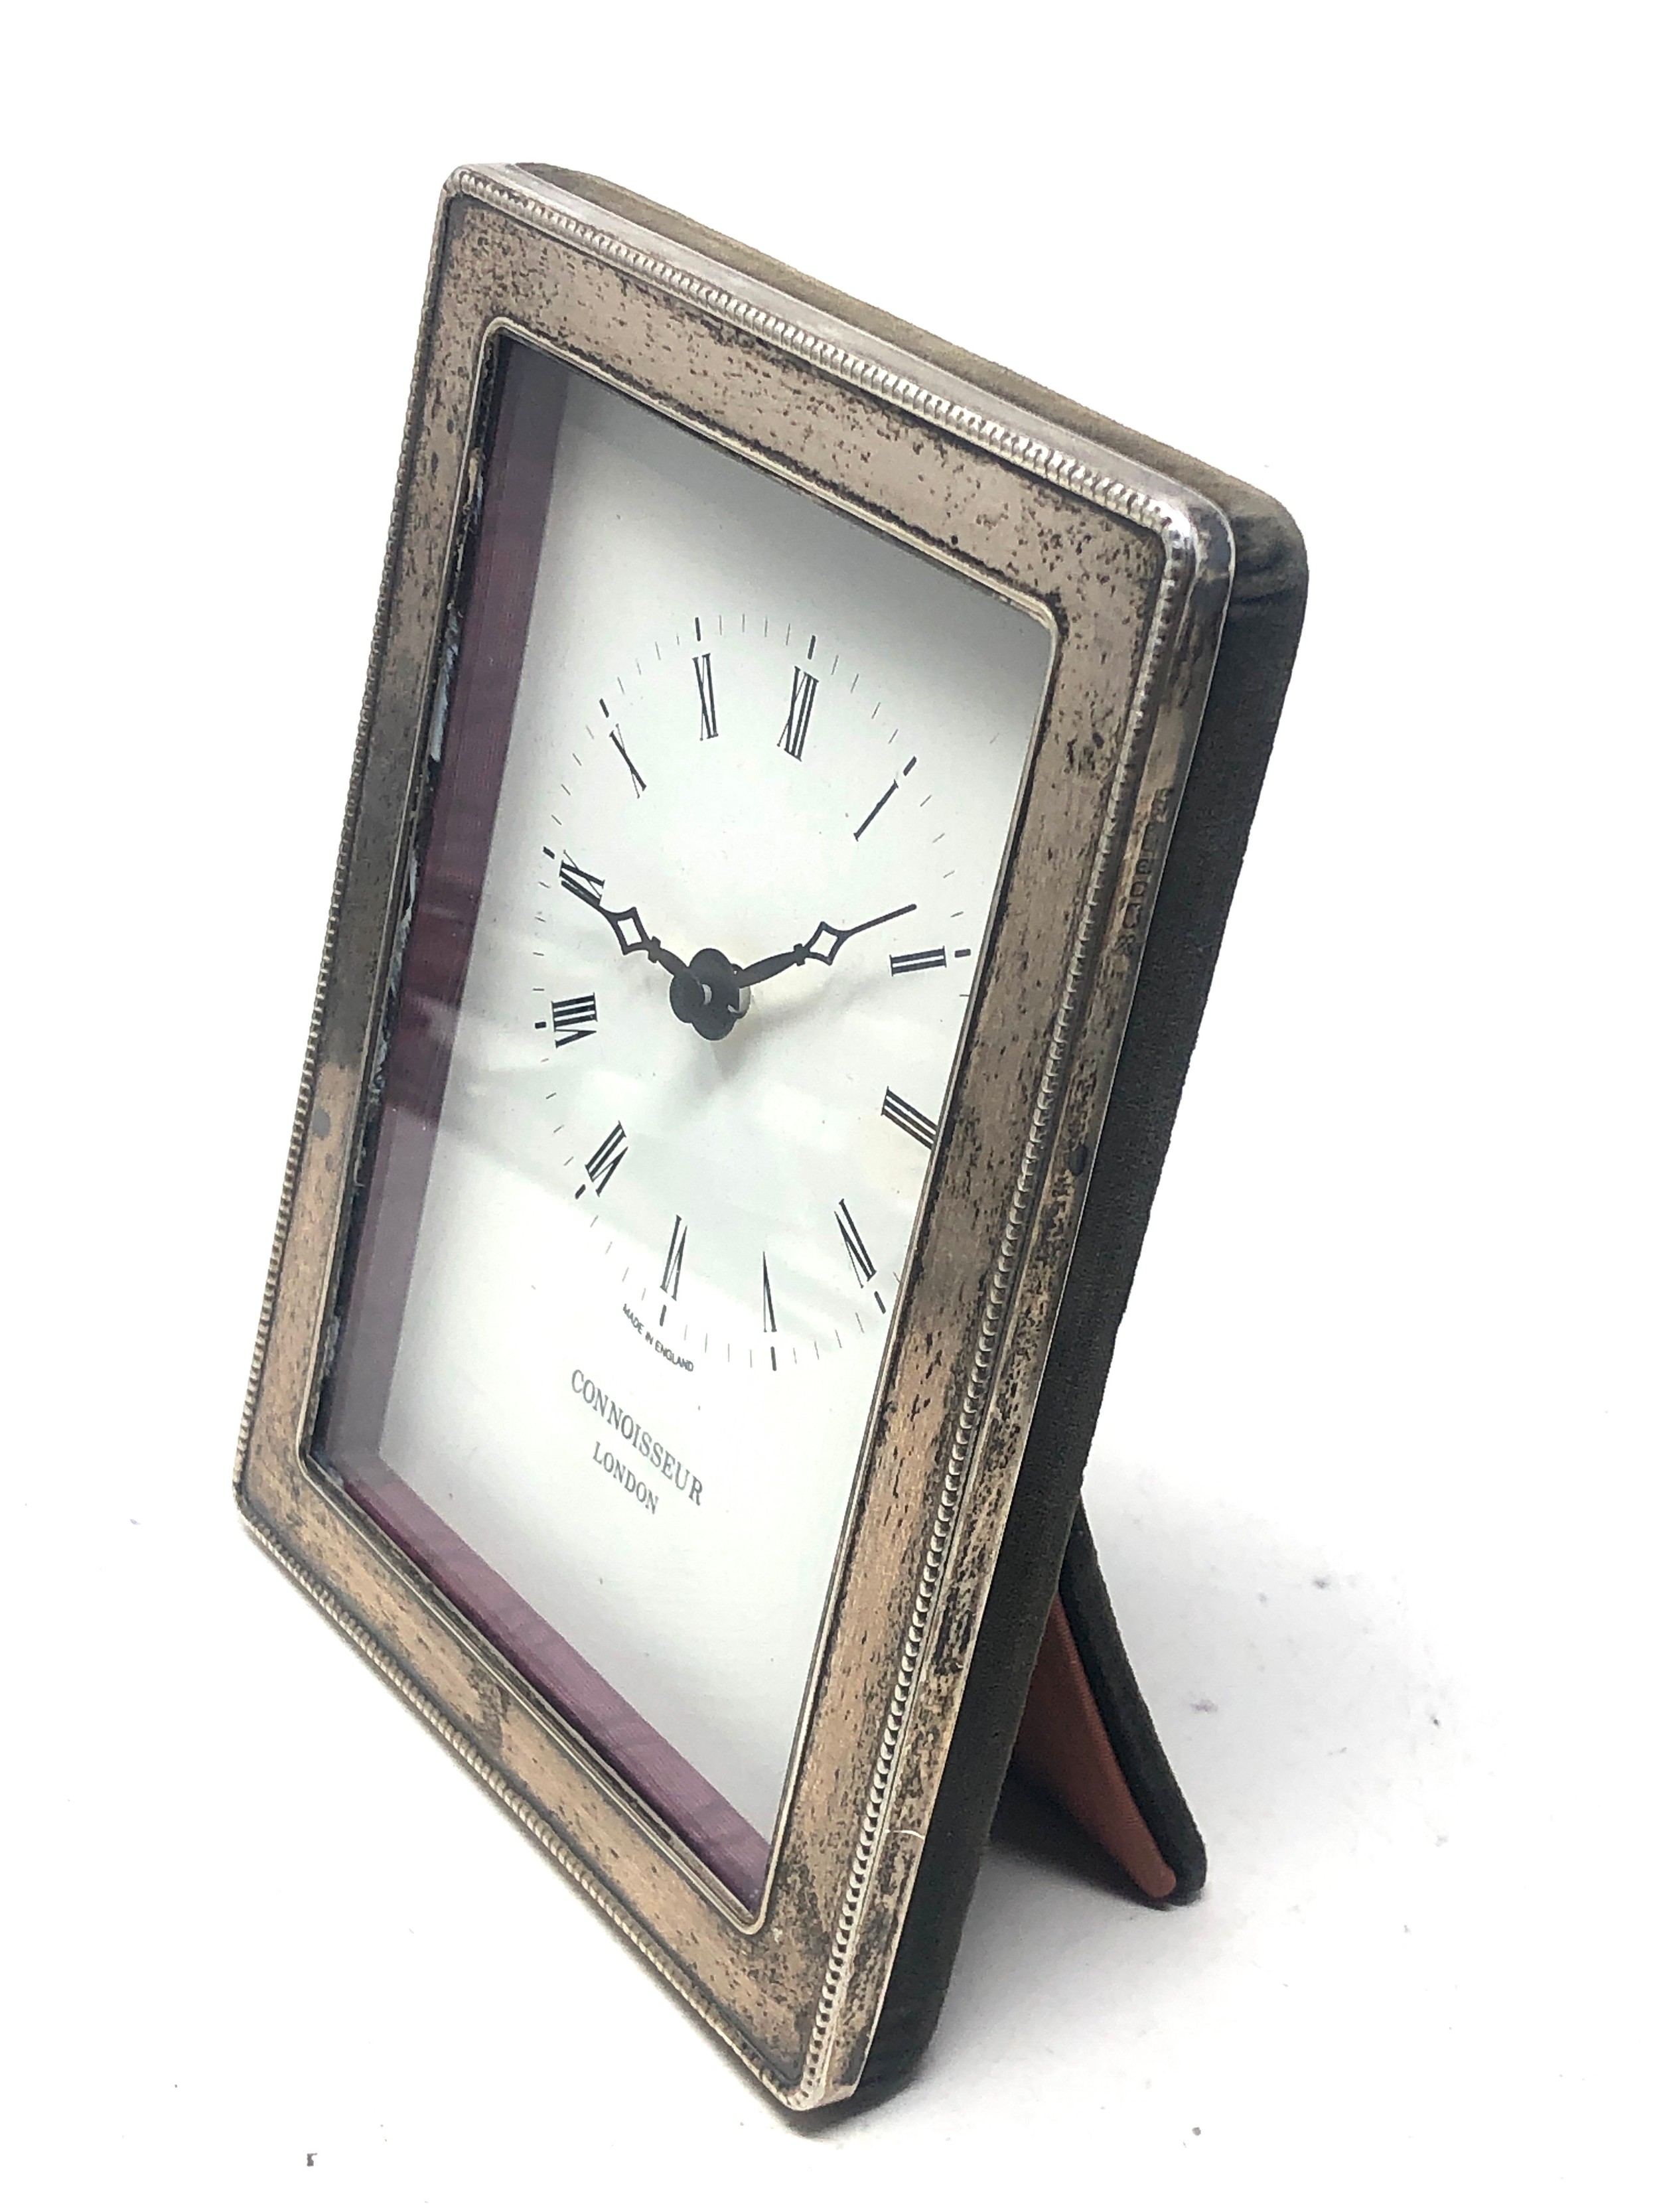 Vintage silver framed connoisseur london clock - Image 2 of 4